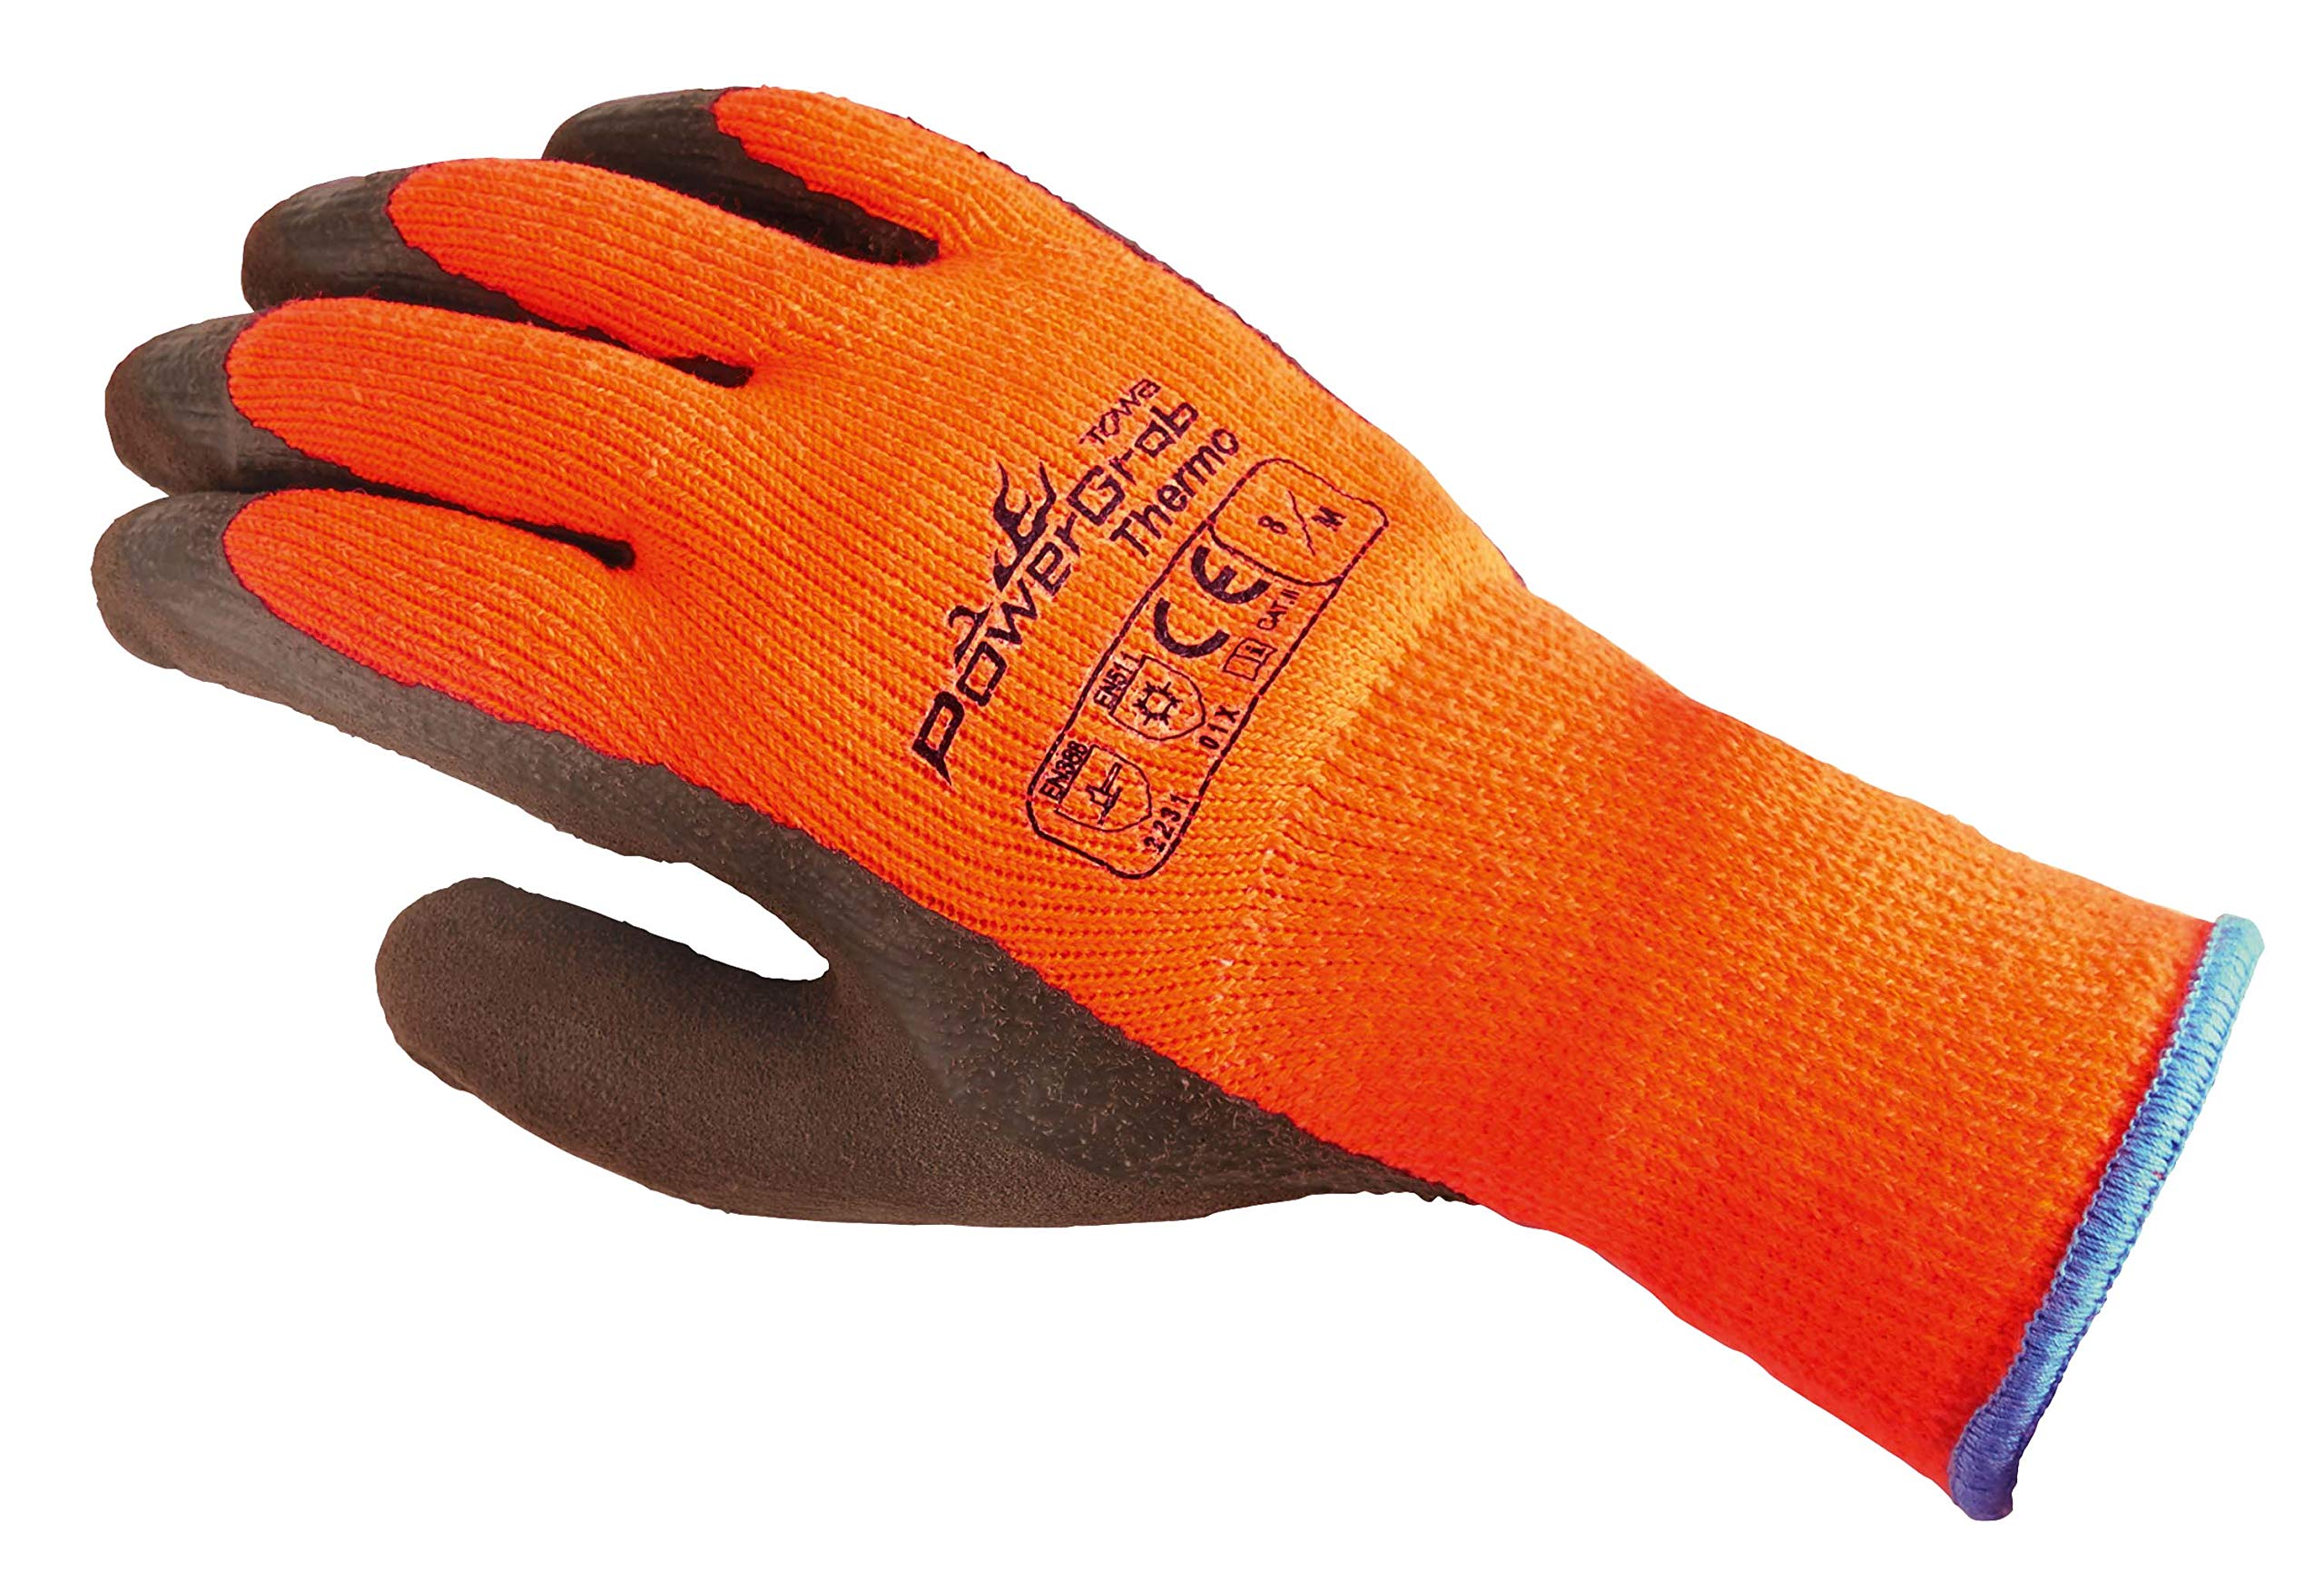 TOWA (6 Paar) Handschuhe Winterhandschuhe PowerGrab Thermo 6 x orange/braun 8